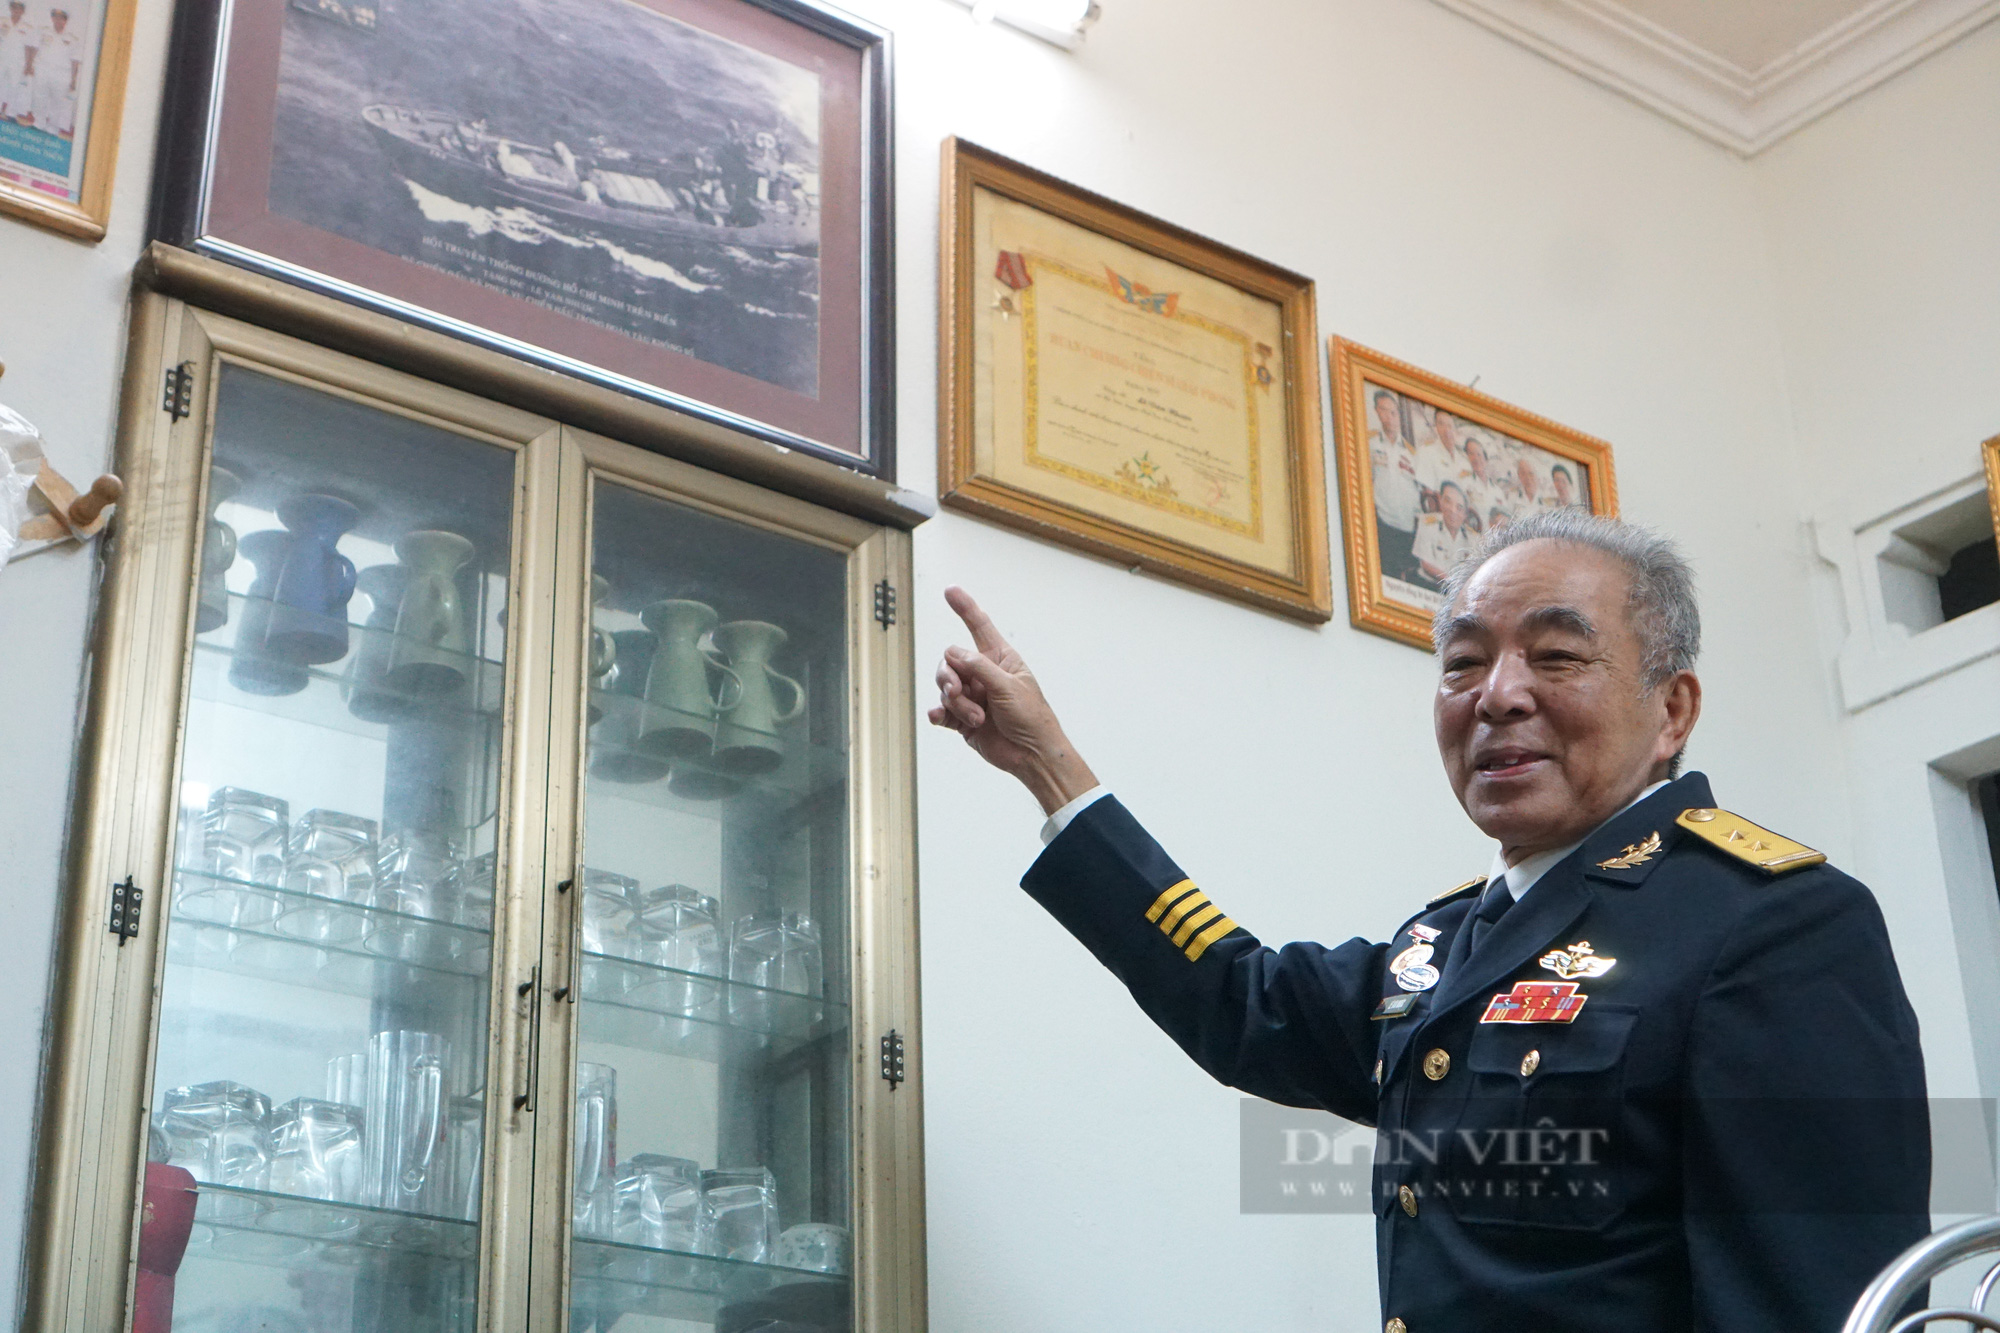 Cựu binh tàu không số Lê Văn Nhược: Tôi nợ vợ một lần lên xe hoa - Ảnh 2.